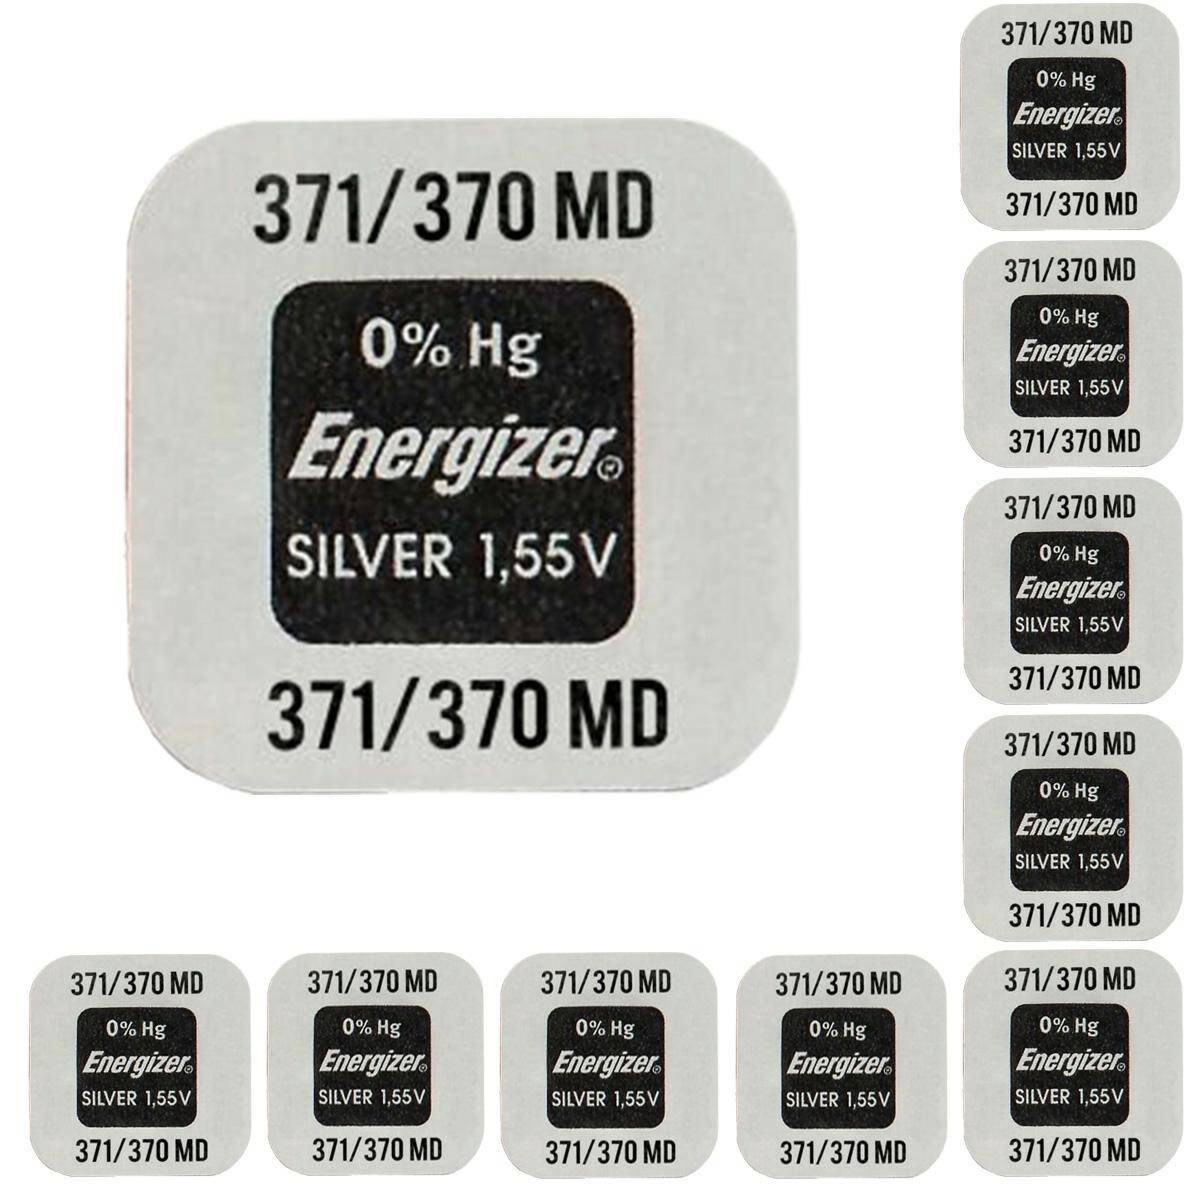 Batterie Energizer 371/370 1,55V - 10 stk.